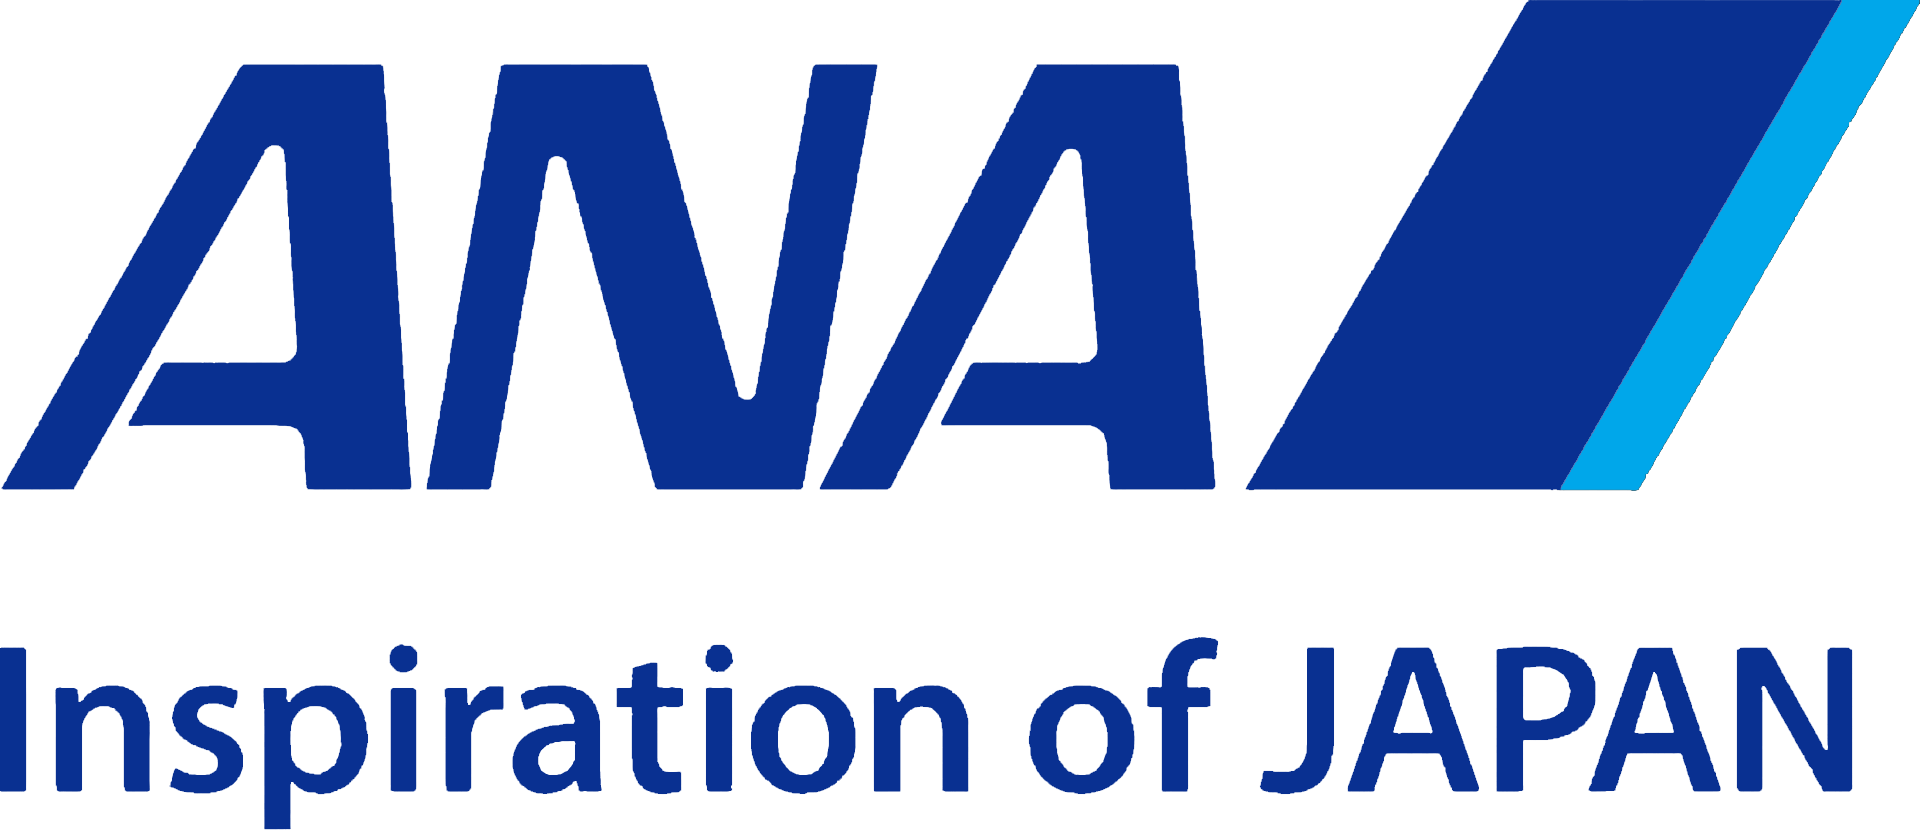 Resultado de imagen para ana airways logo